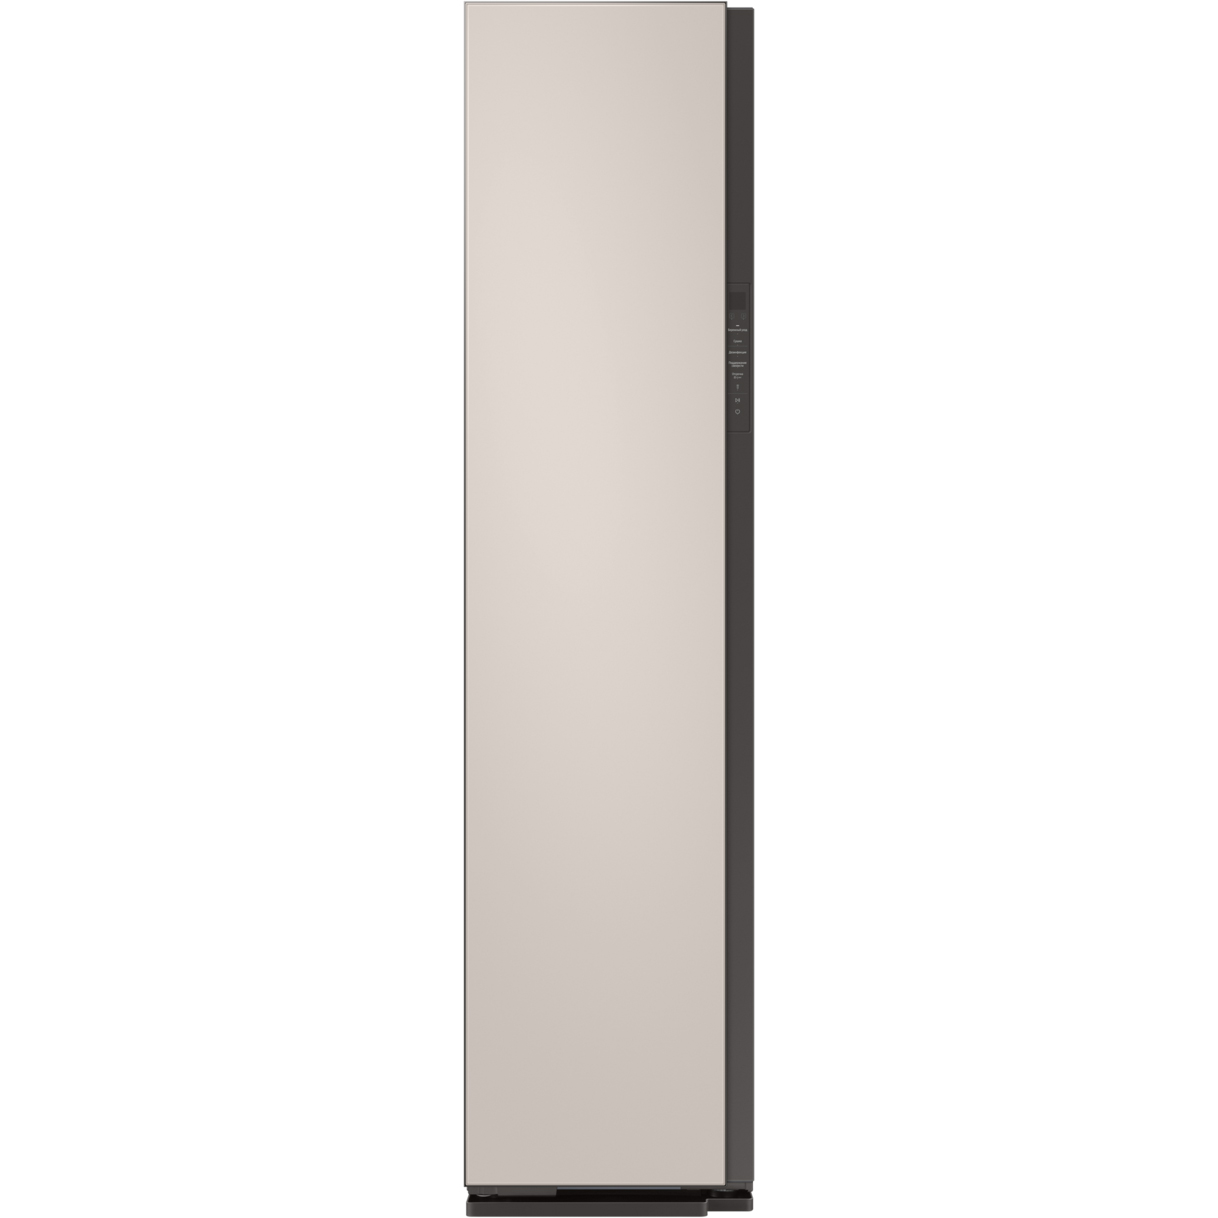 Паровой шкаф Samsung DF60A8500EG матово-бежевый, цвет черный - фото 1